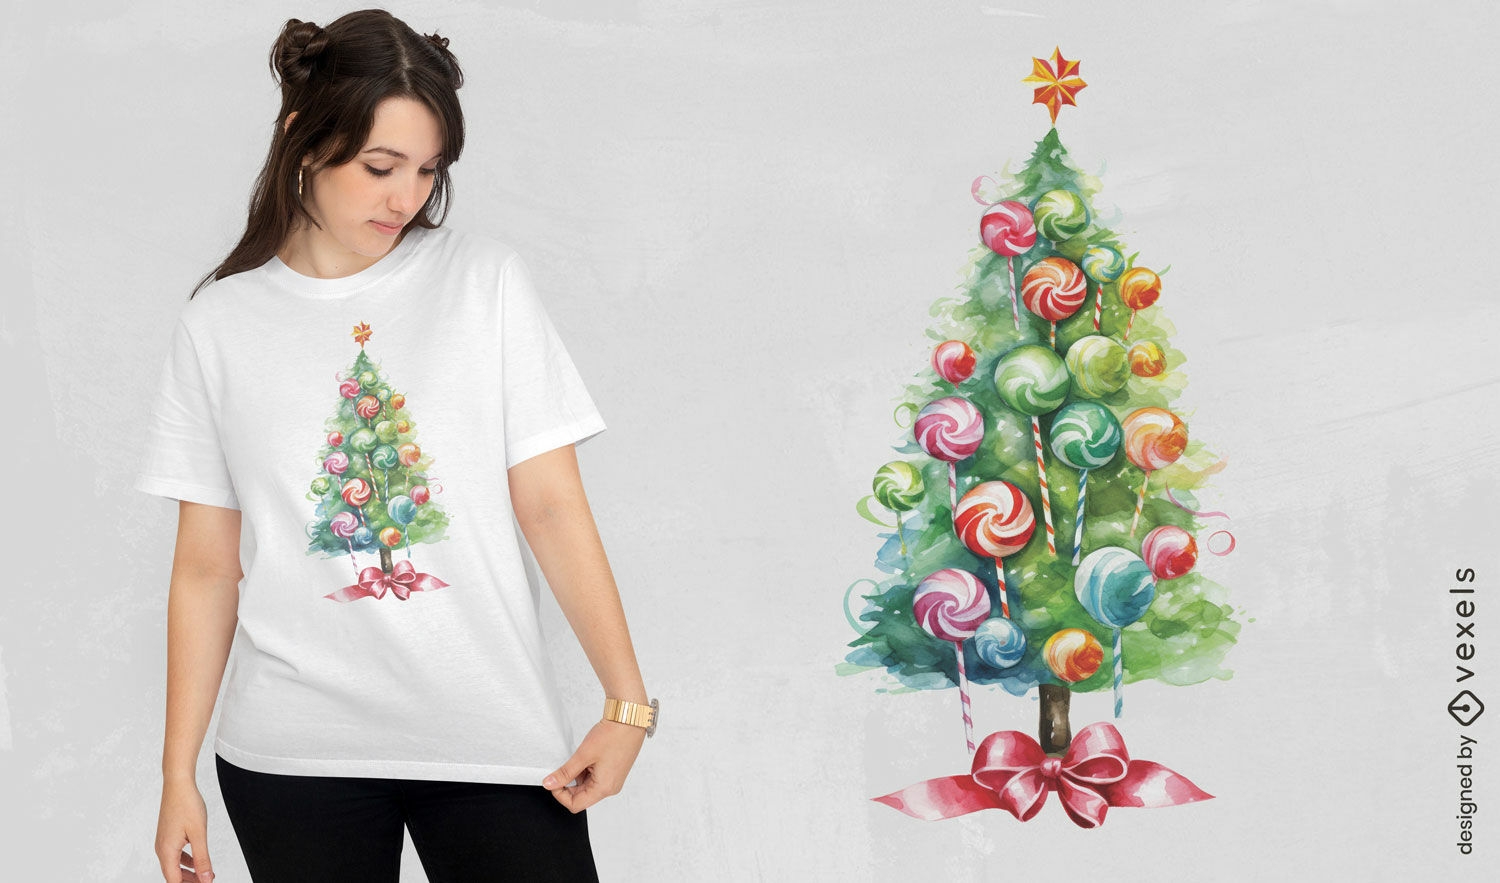 Diseño de camiseta de piruleta de árbol de Navidad.